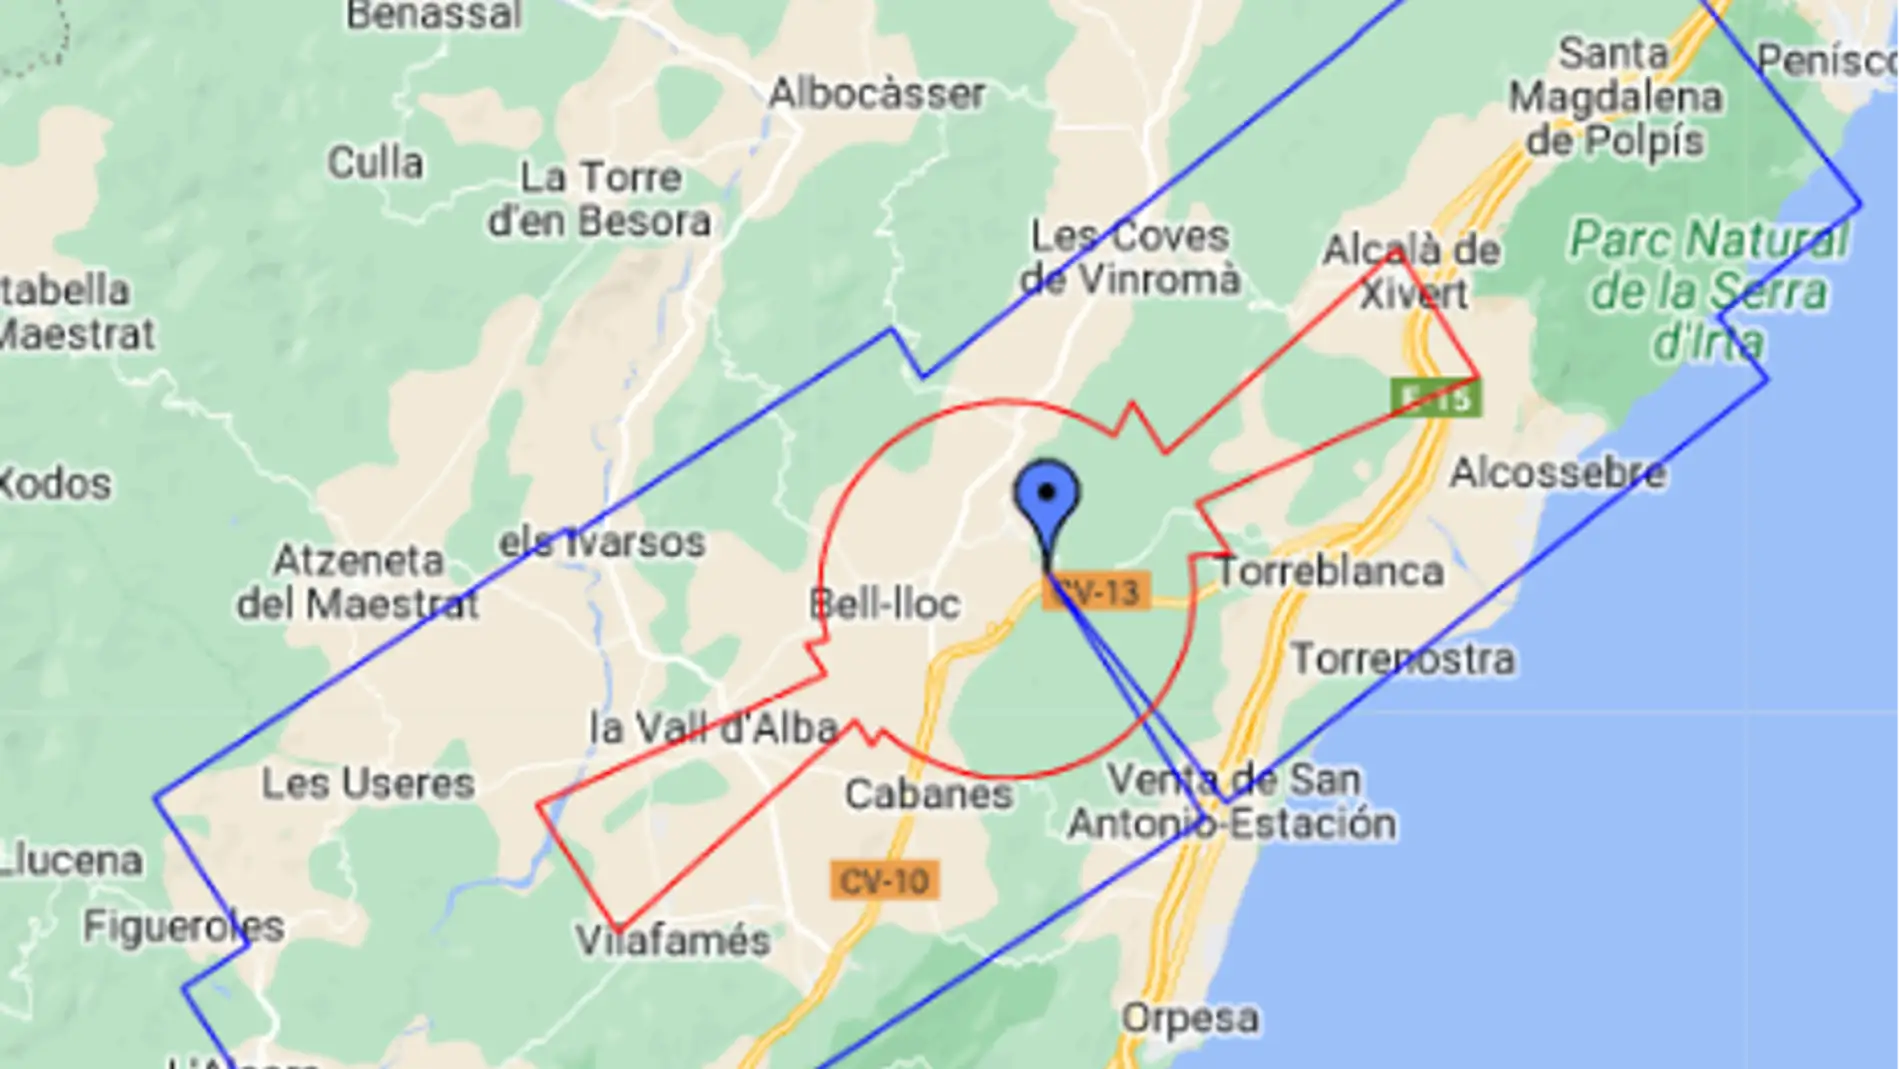 Los macroproyectos fotovoltaicos planteados en Useres, Cabanes y Vilafamés se ubican dentro del espacio aéreo del Aeropuerto de Castellón